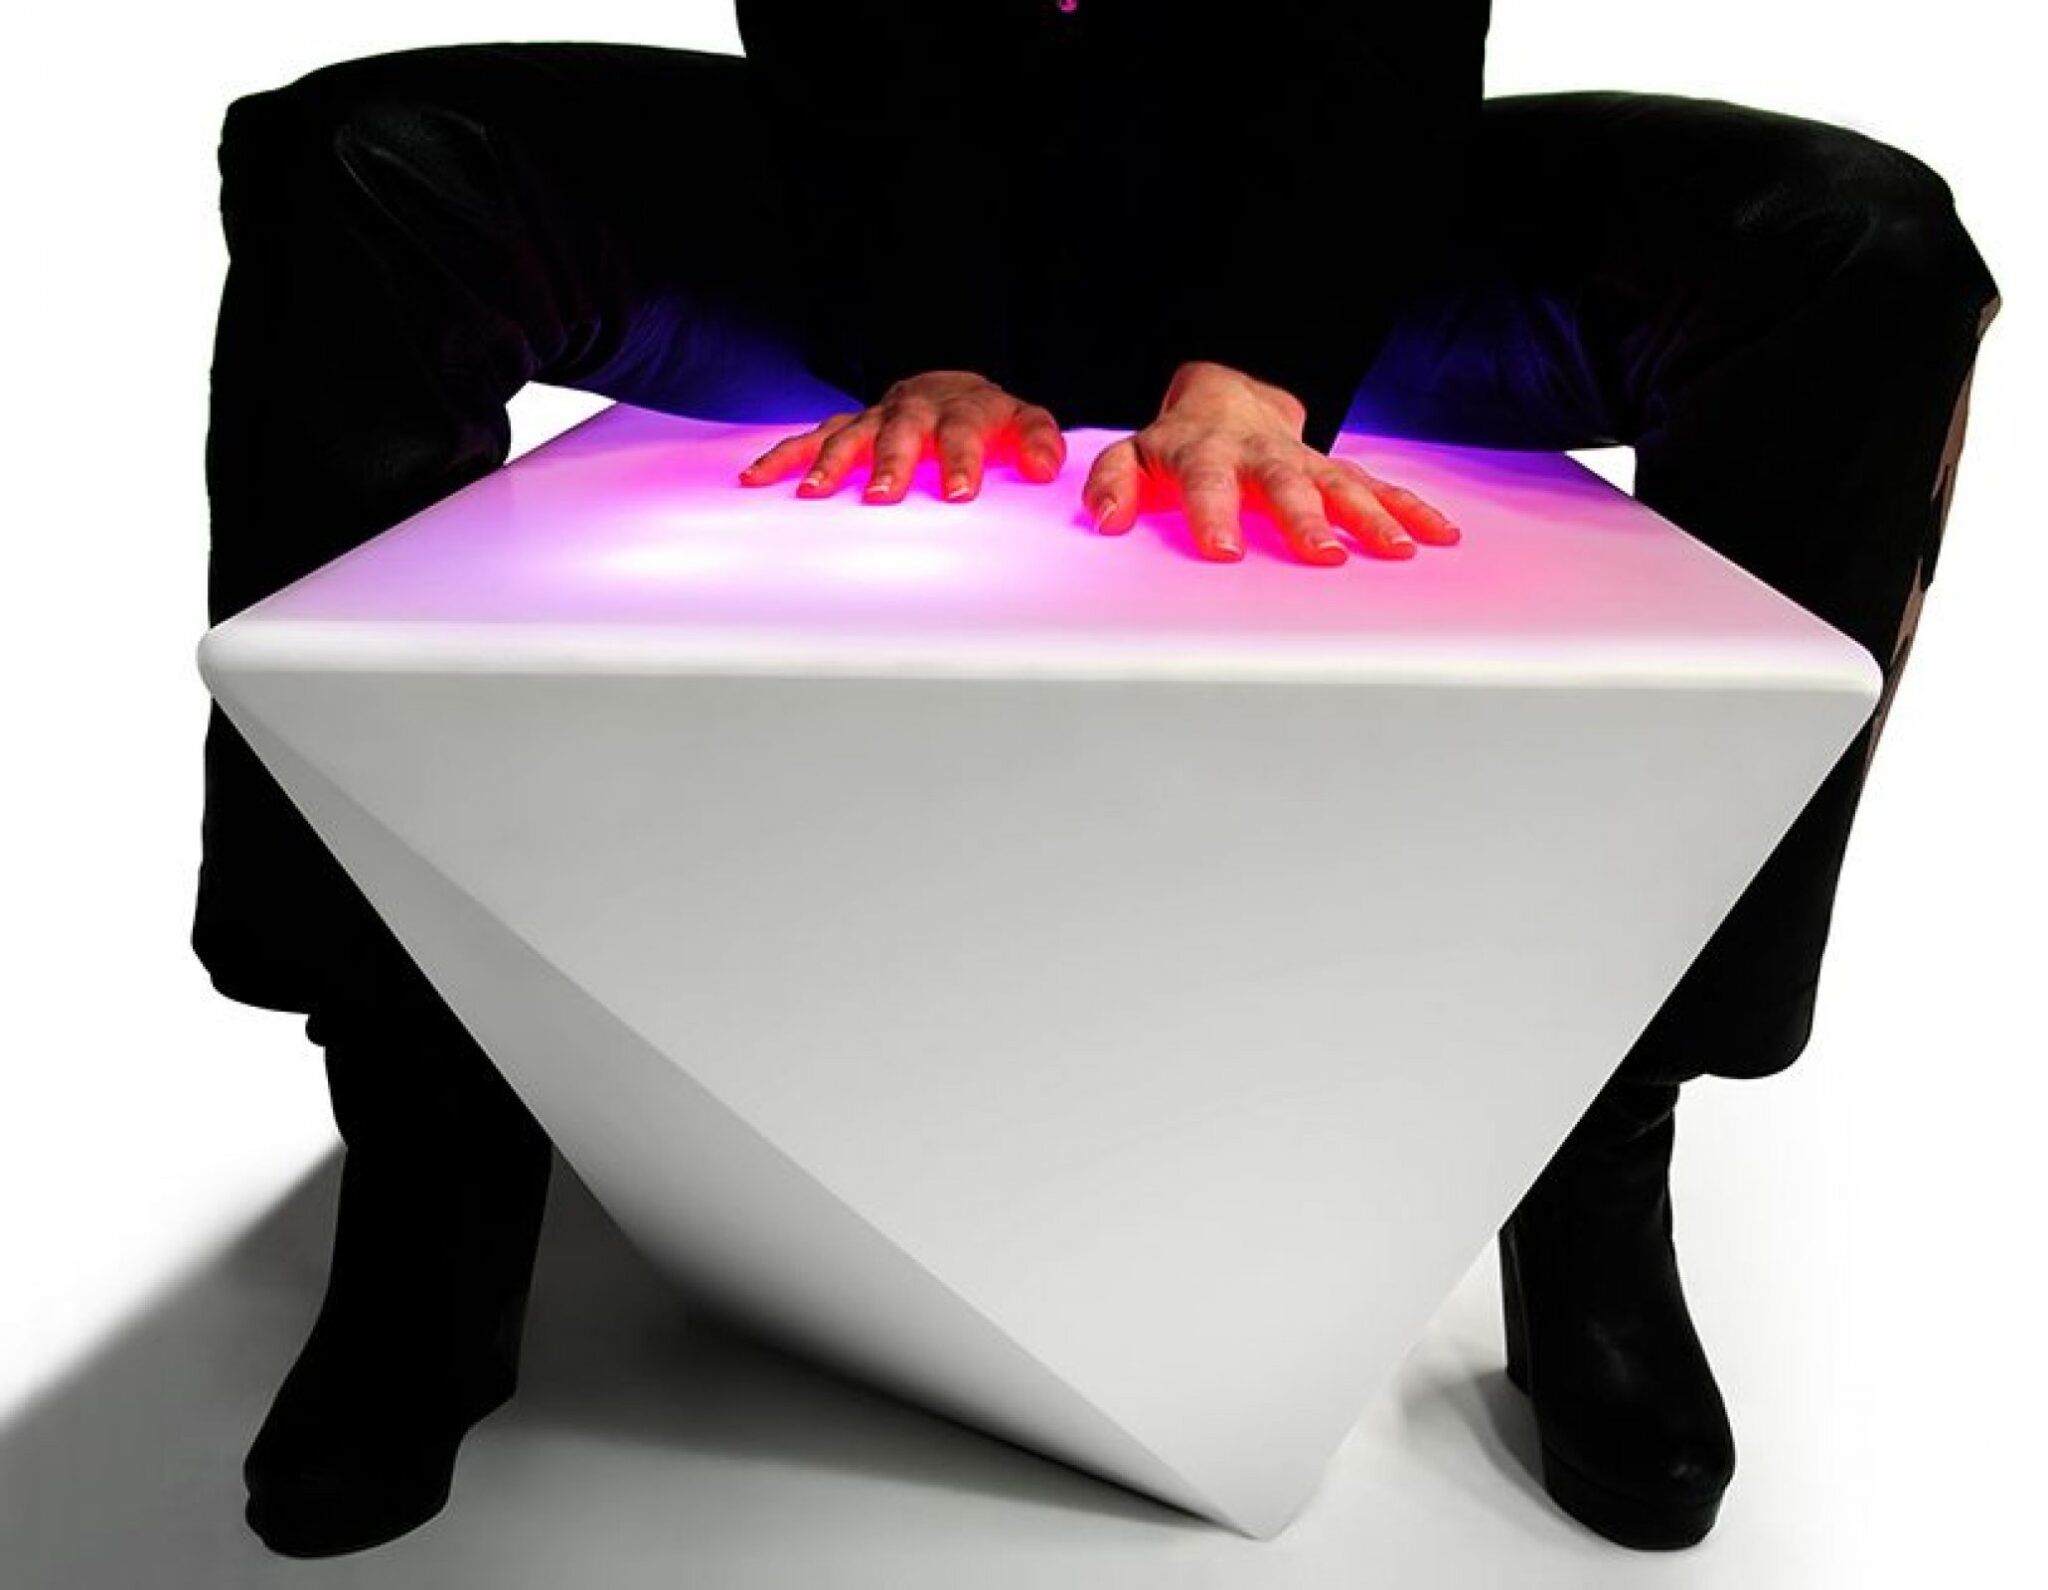 Стол светящийся реагирующий на касание. Стол реагирует на прикосновения. Интерактивная мебель. Материал реагирующий на прикосновение. Interactive light